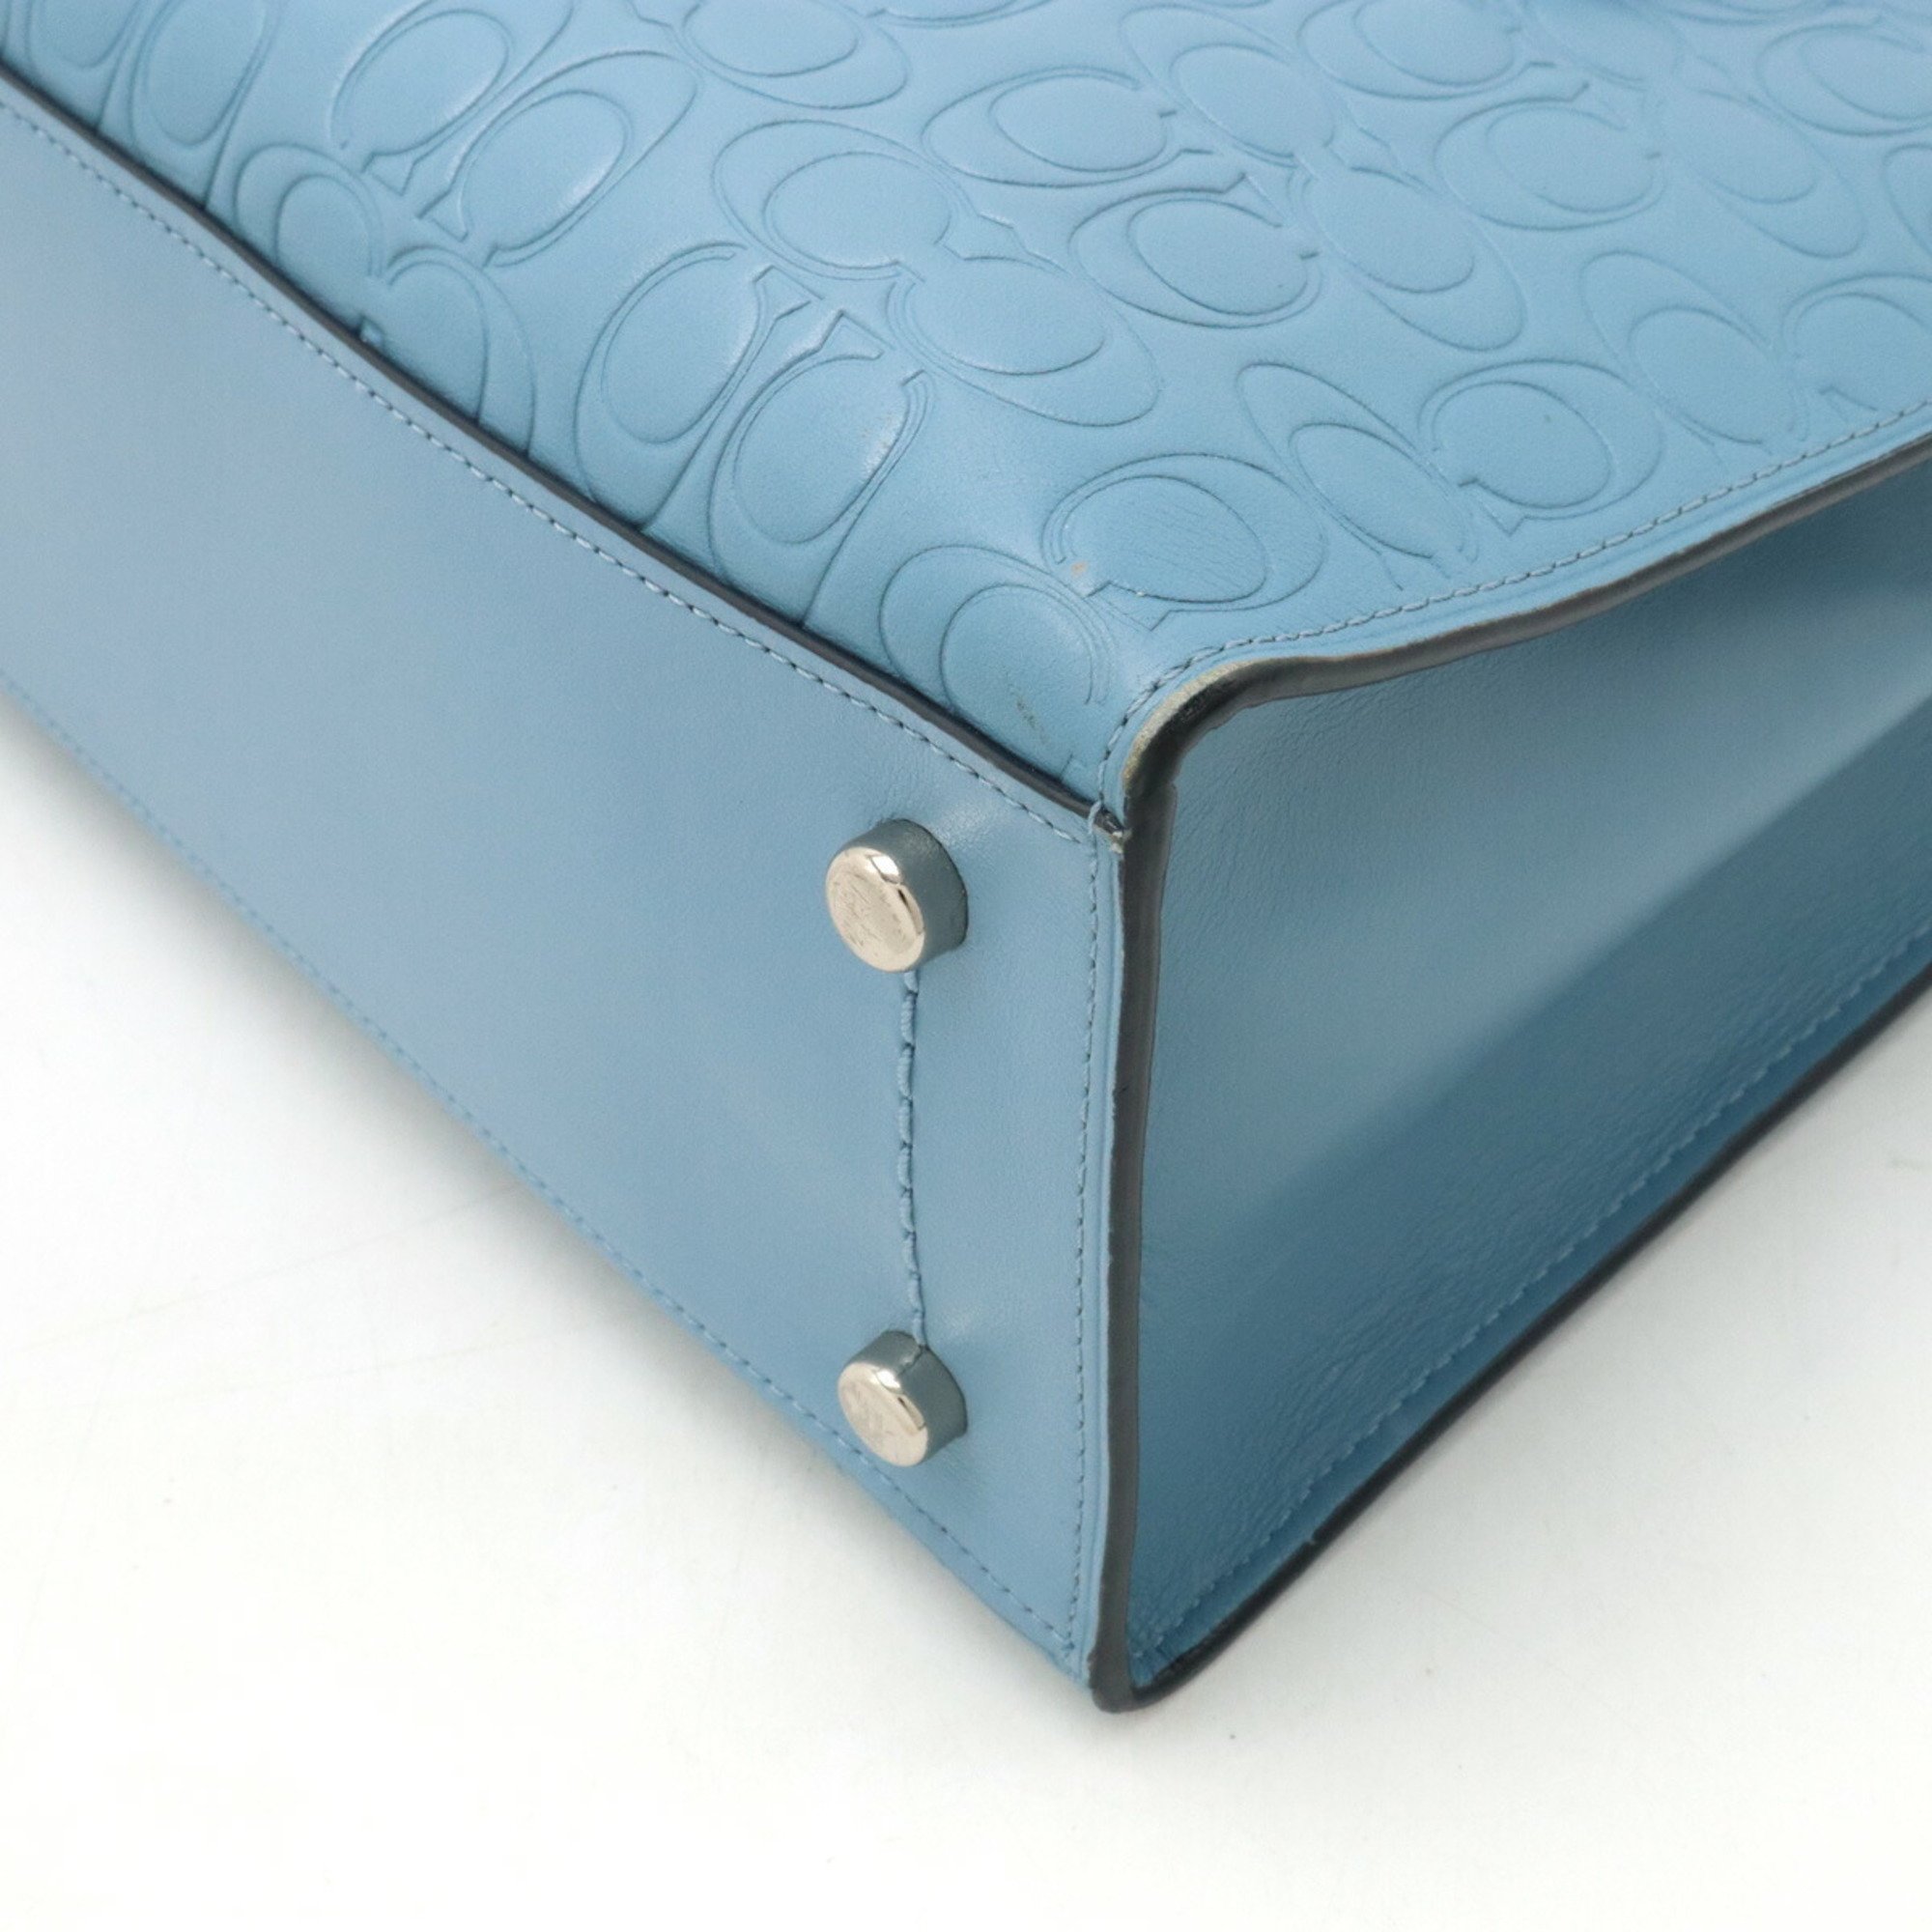 COACH Charlie Carryall Handbag Shoulder Bag Signature Embossed Leather Light Blue 51665